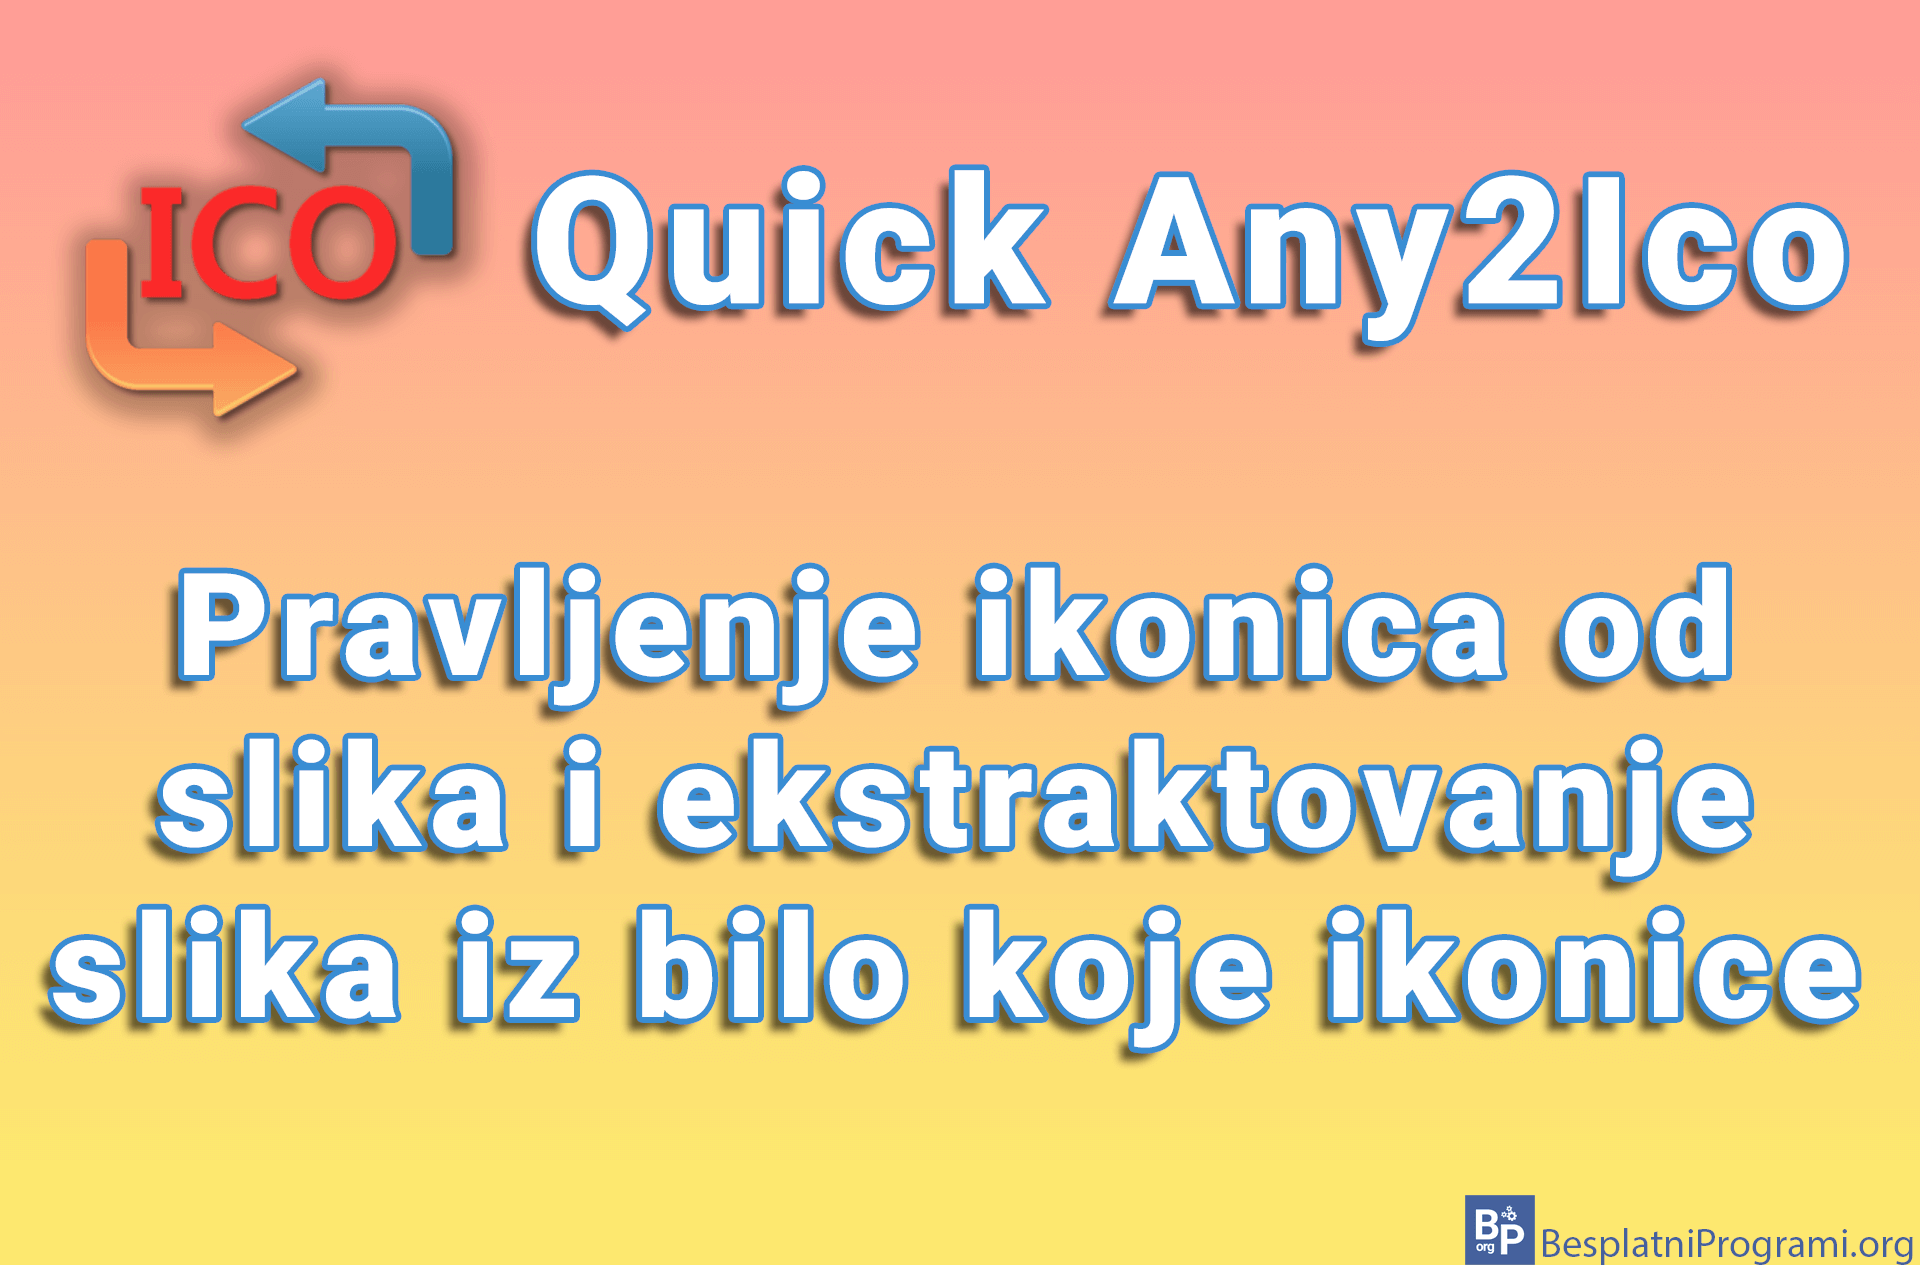 Quick Any2Ico – Pravljenje ikonica od slika i ekstraktovanje slika iz bilo koje ikonice